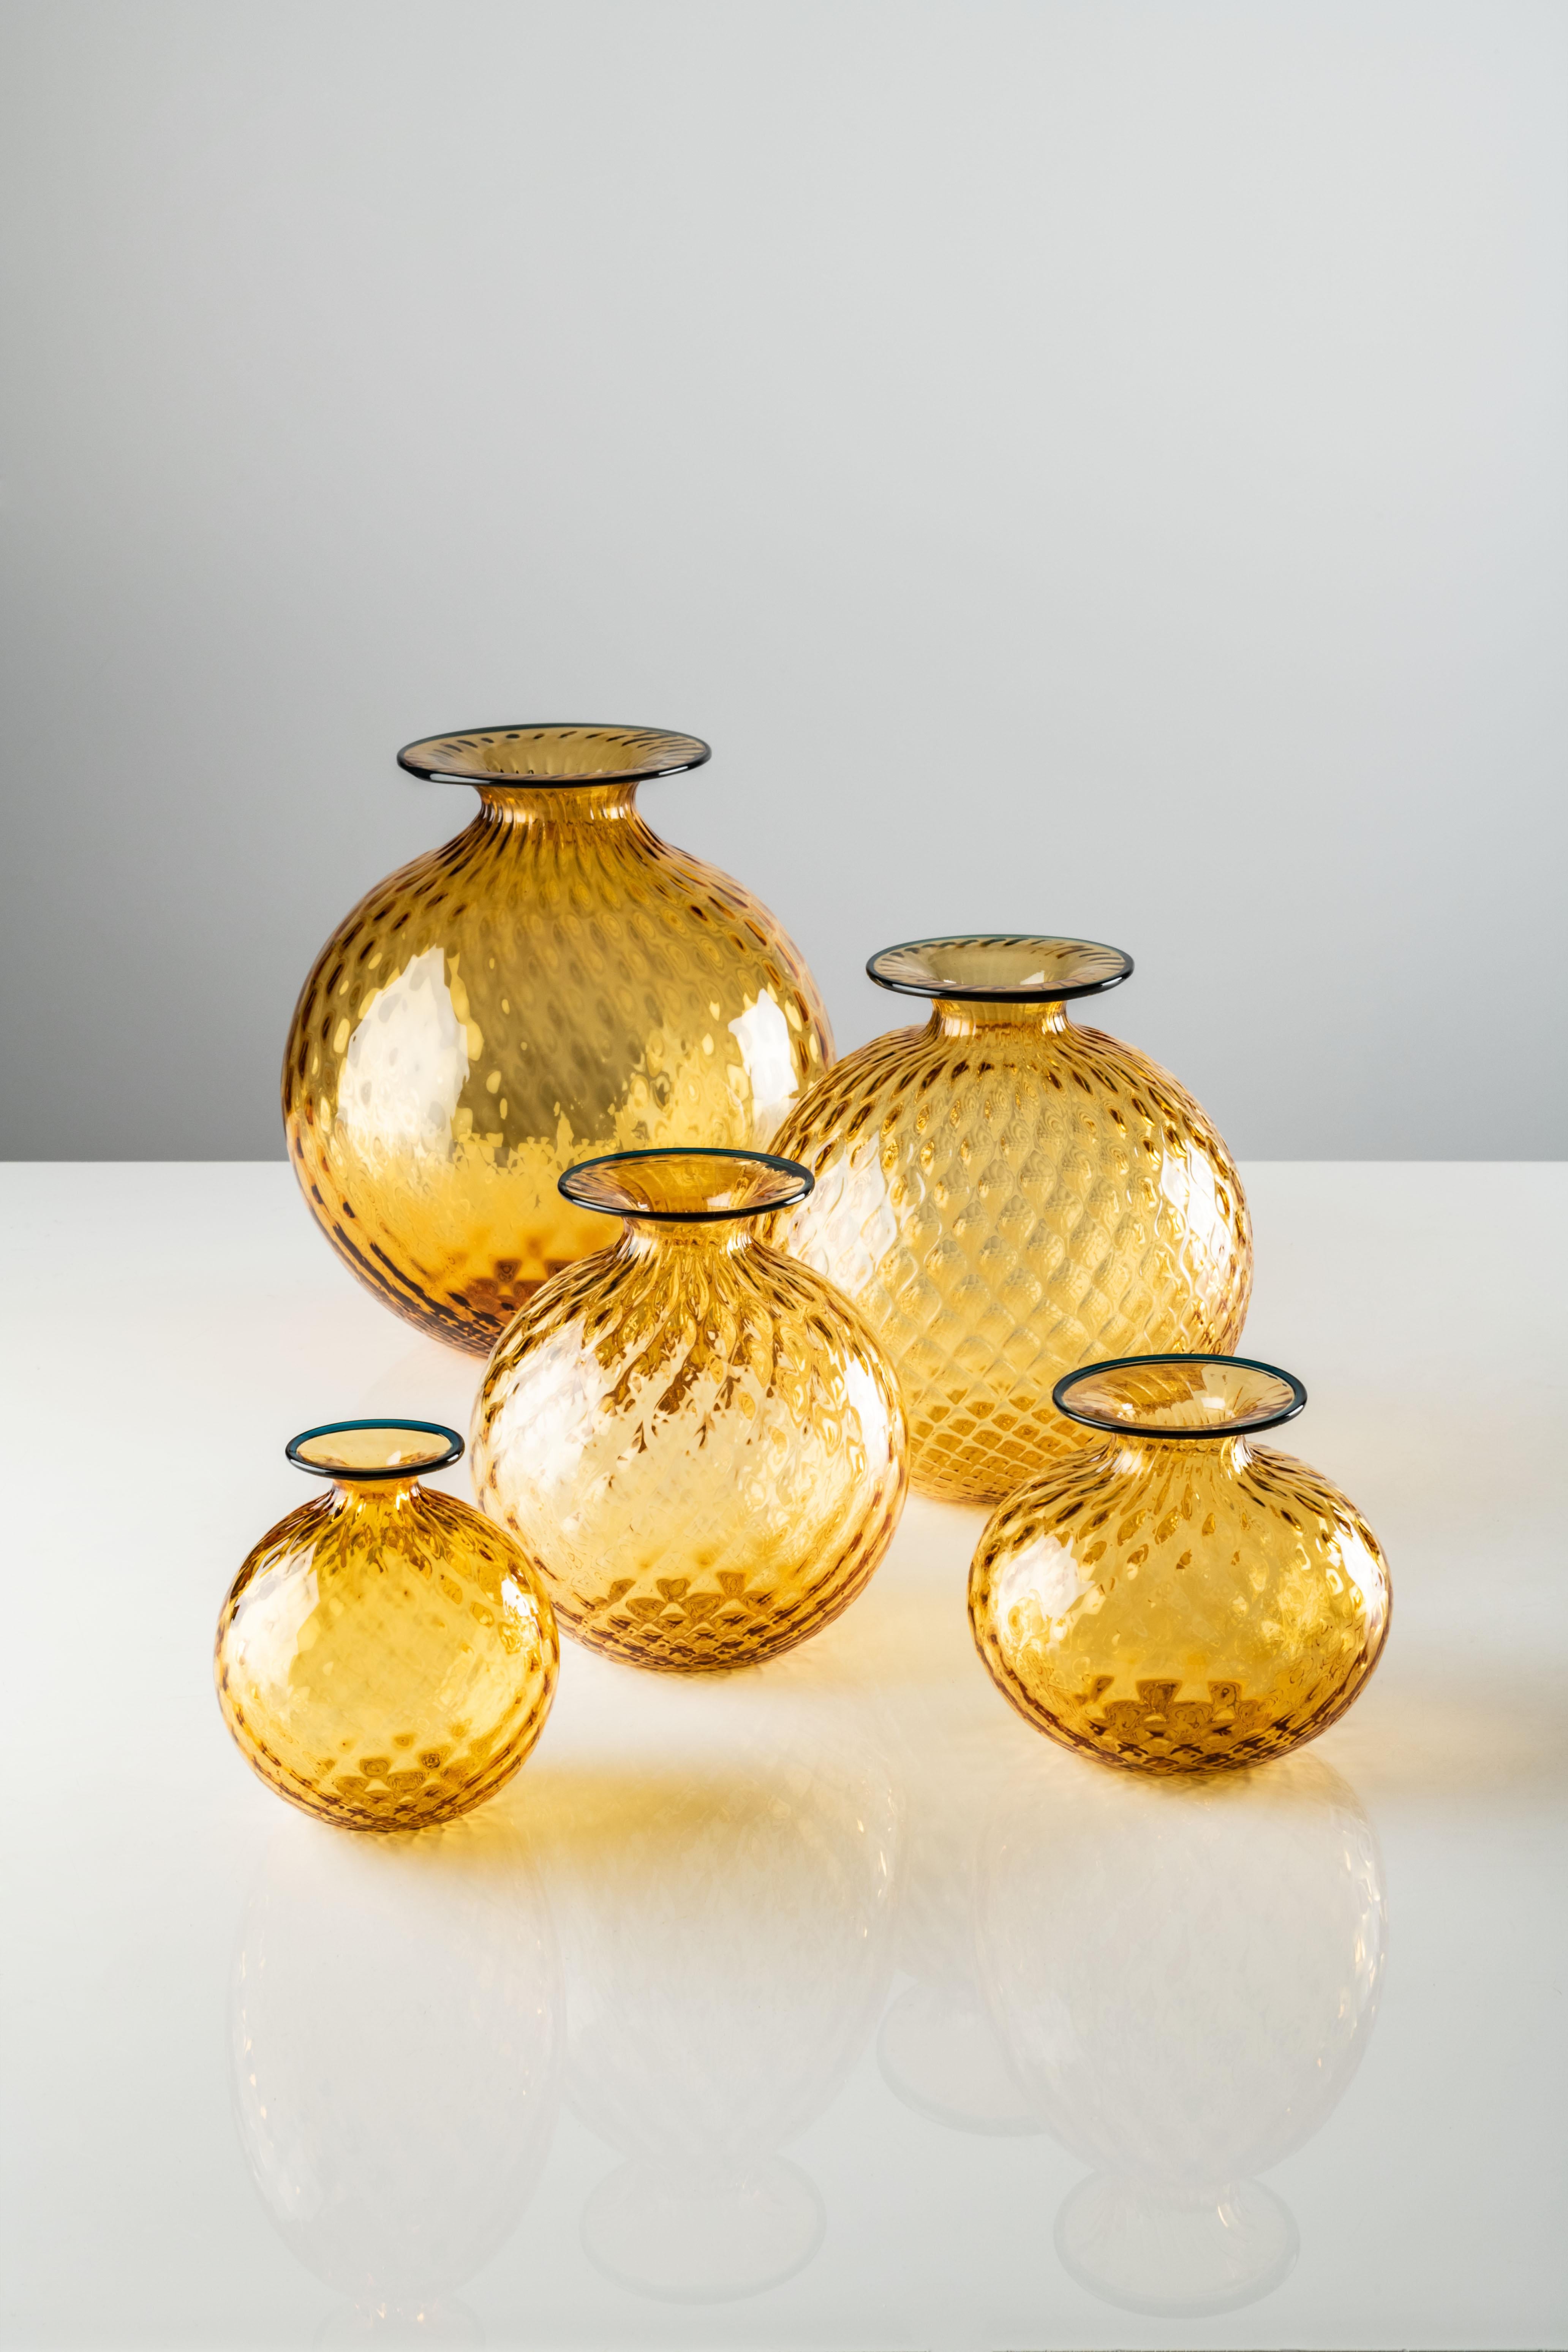 Très grand vase Monofiore Balloton en verre Murano ambré de Venini. Il a l'air doux, mais il ne l'est pas ; c'est du verre. L'illusion d'optique de Monofiori de Venini de 1970 réside dans son nom : Balloton, une technique spéciale qui confère à la